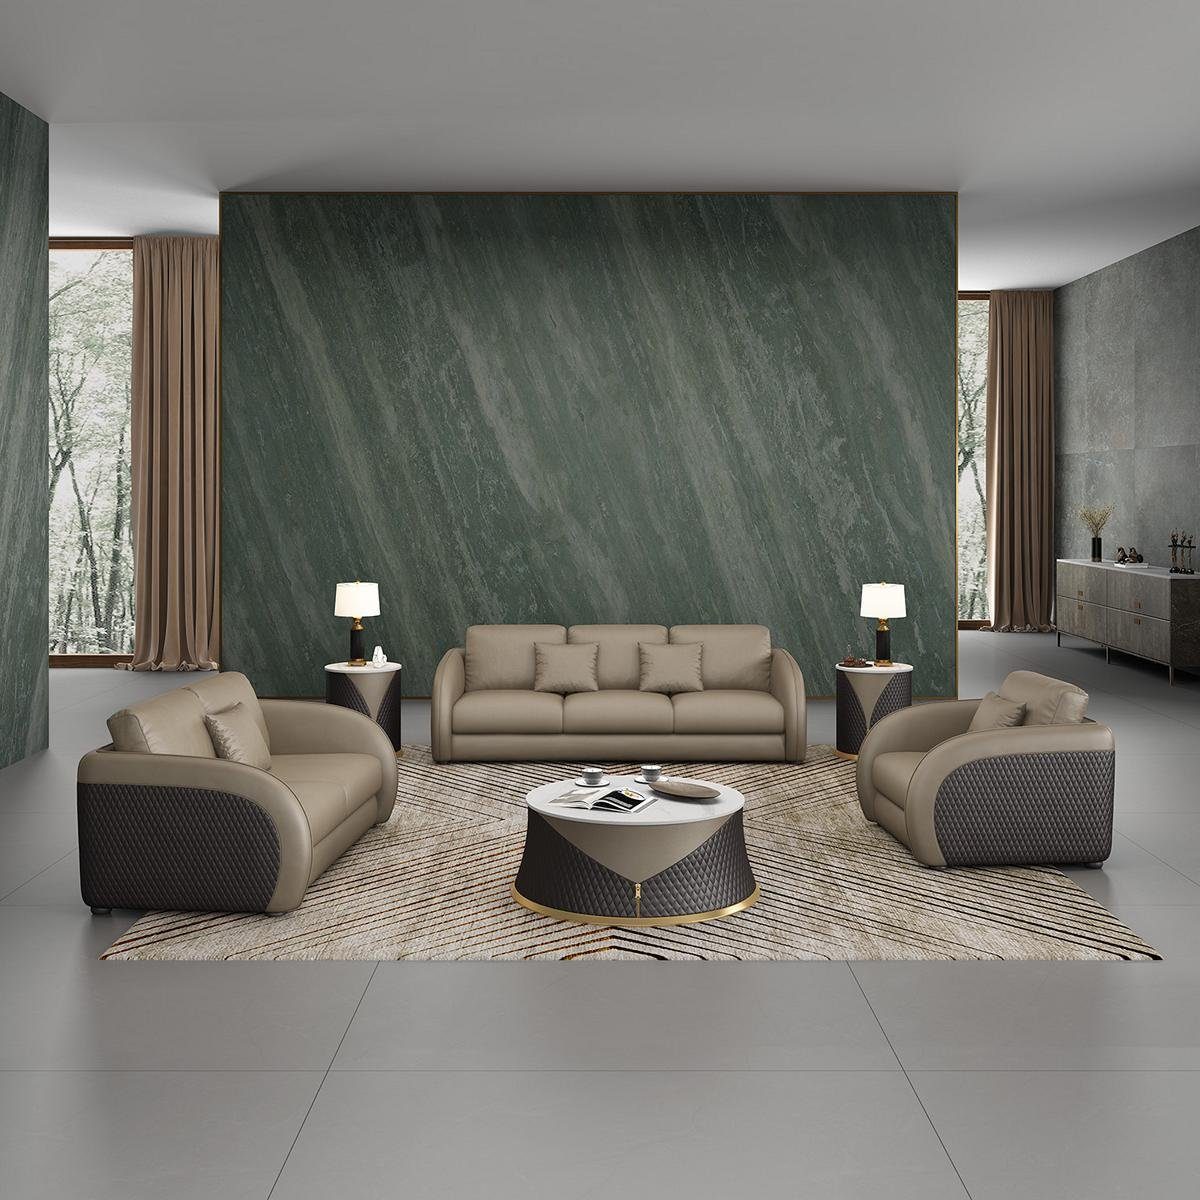 JVmoebel Wohnzimmer-Set, Sofagarnitur 3 2 1 Sitzer Set Design Sofa Polster Couchen Couch Grau/Schwarz